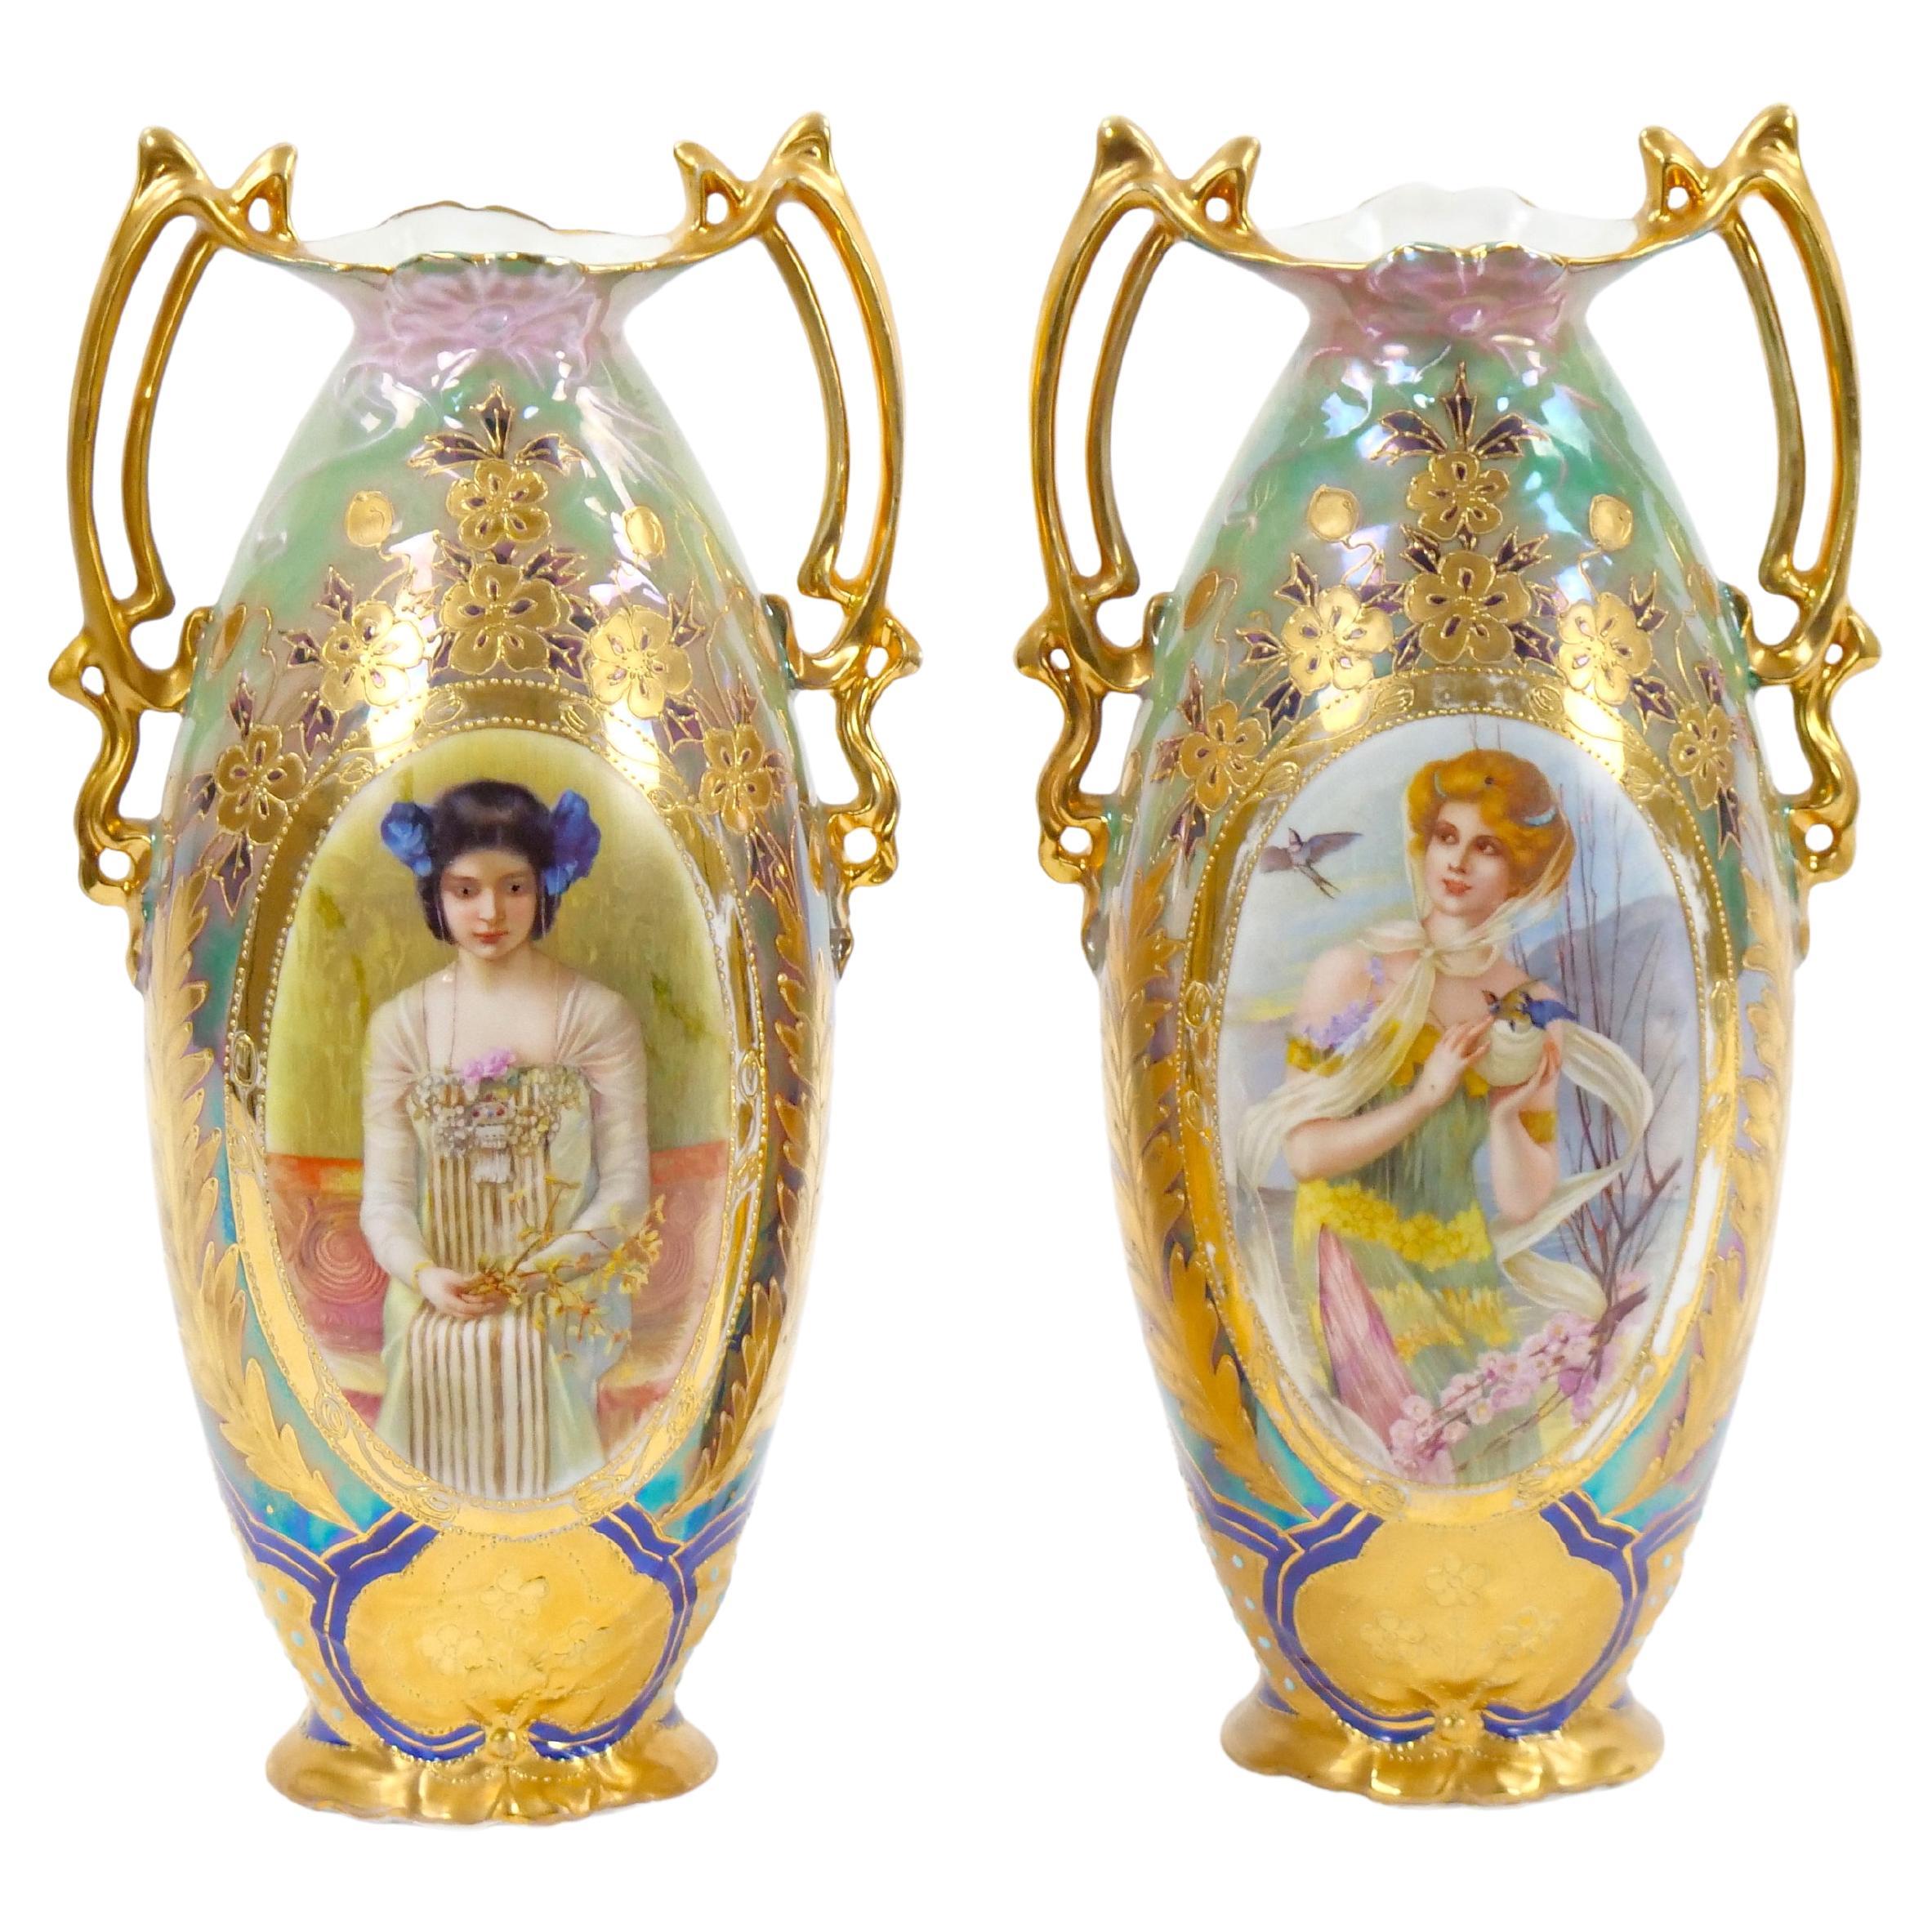 Early 20th Century German Art Nouveau Hand-Painted / Gilt Porcelain Vases